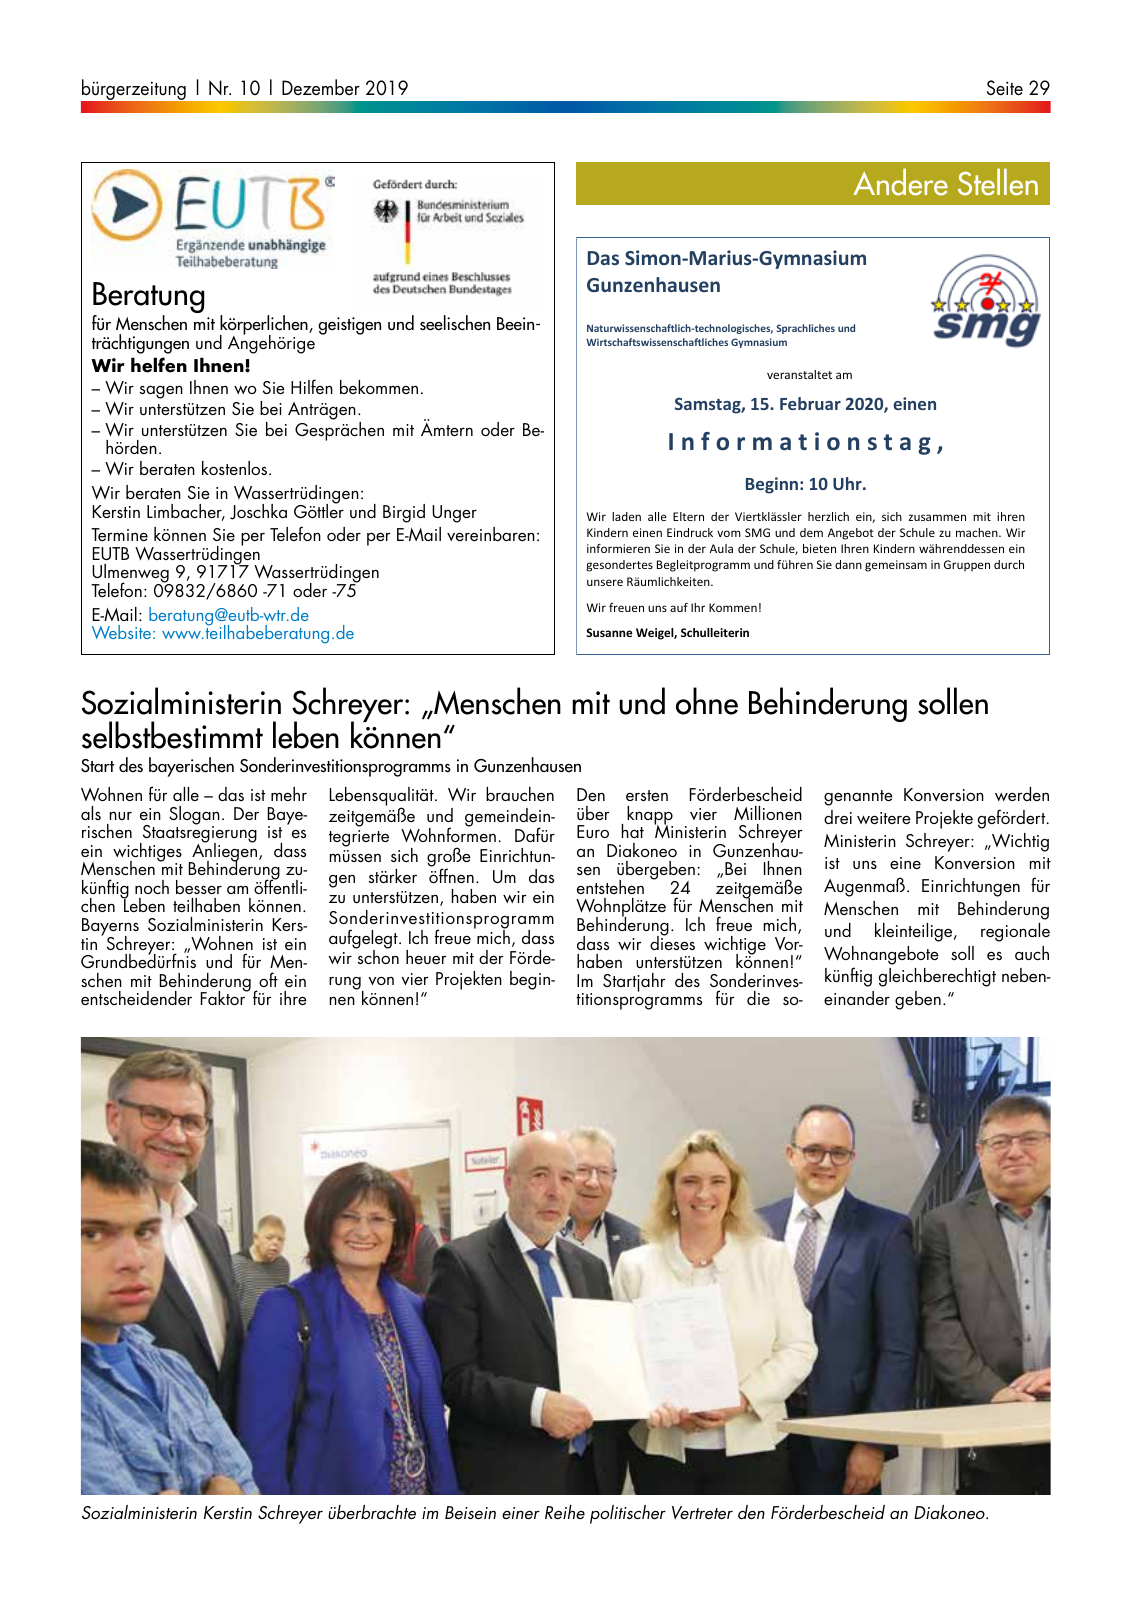 Vorschau buergerzeitung_12_2019 Seite 29